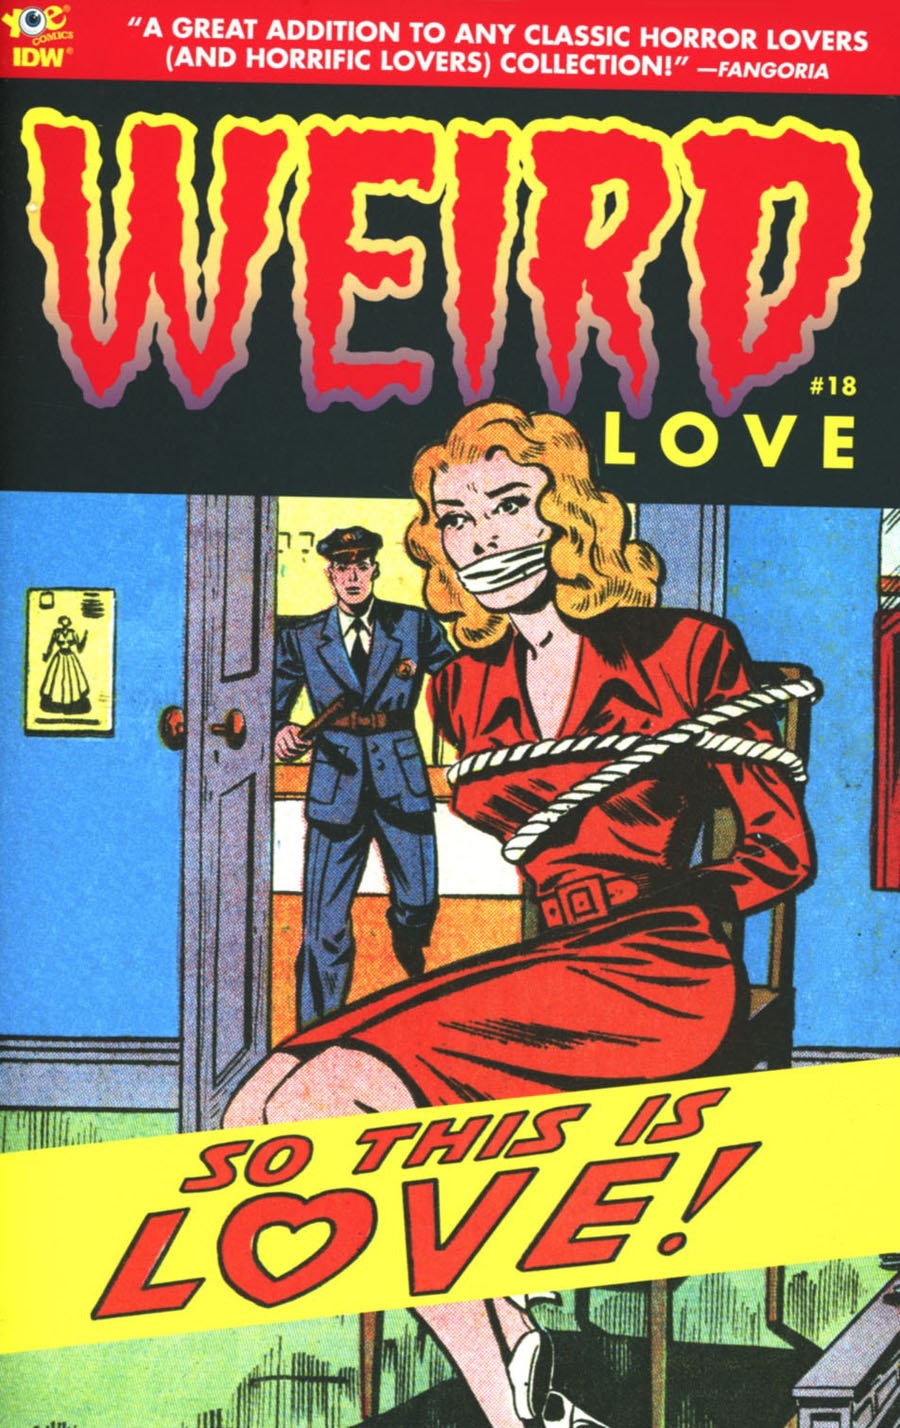 Weird Love #18